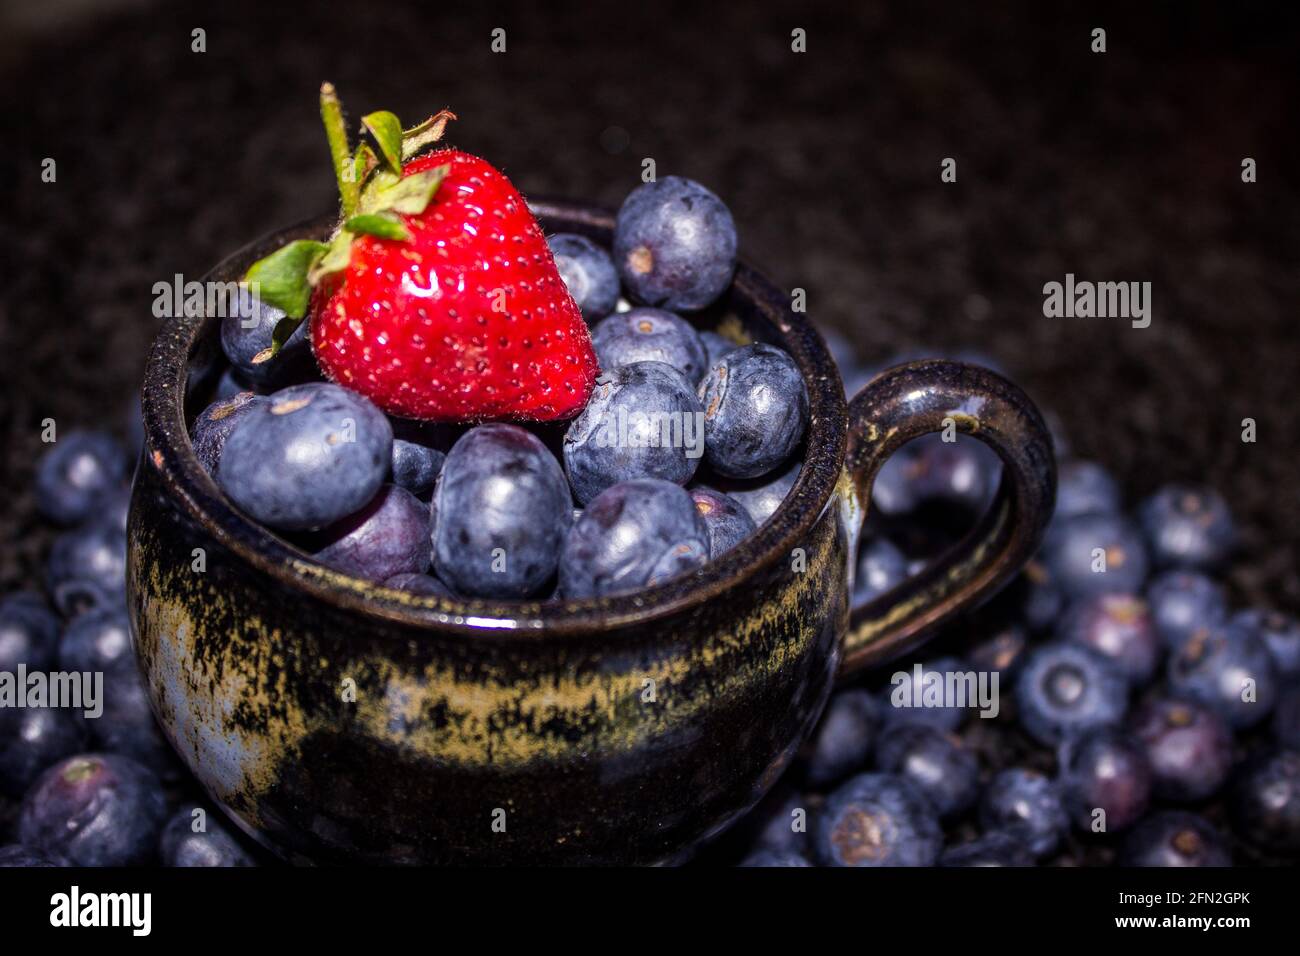 Une seule fraise rouge vif sur une tasse de thé noir, remplie de grandes baies bleues de couleur indigo Banque D'Images